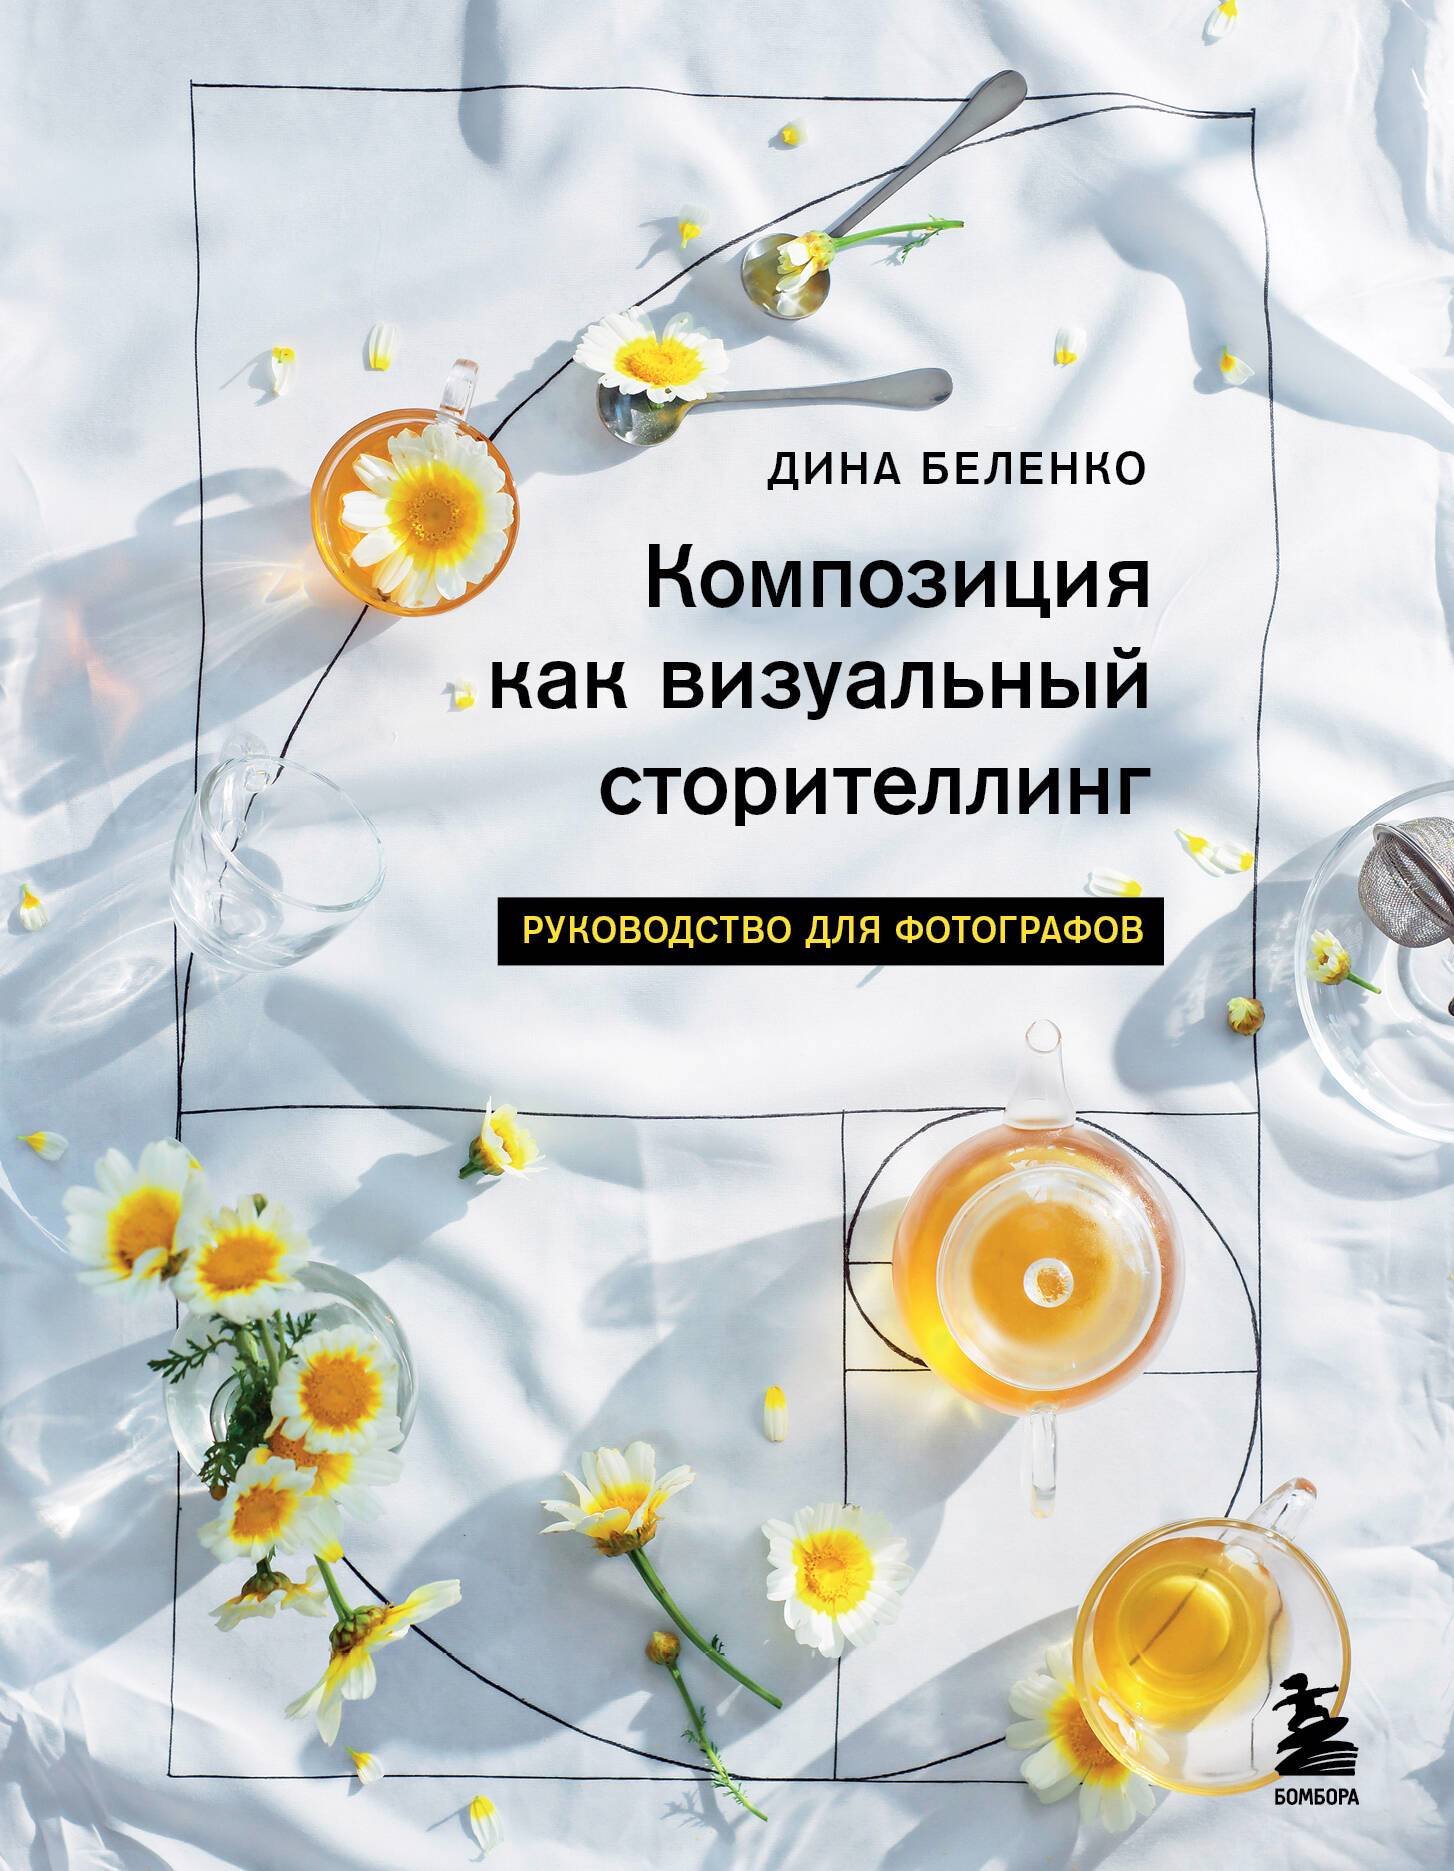 Беленко Дина Сергеевна - Композиция как визуальный сторителлинг: книга для фотографов (у.н.)